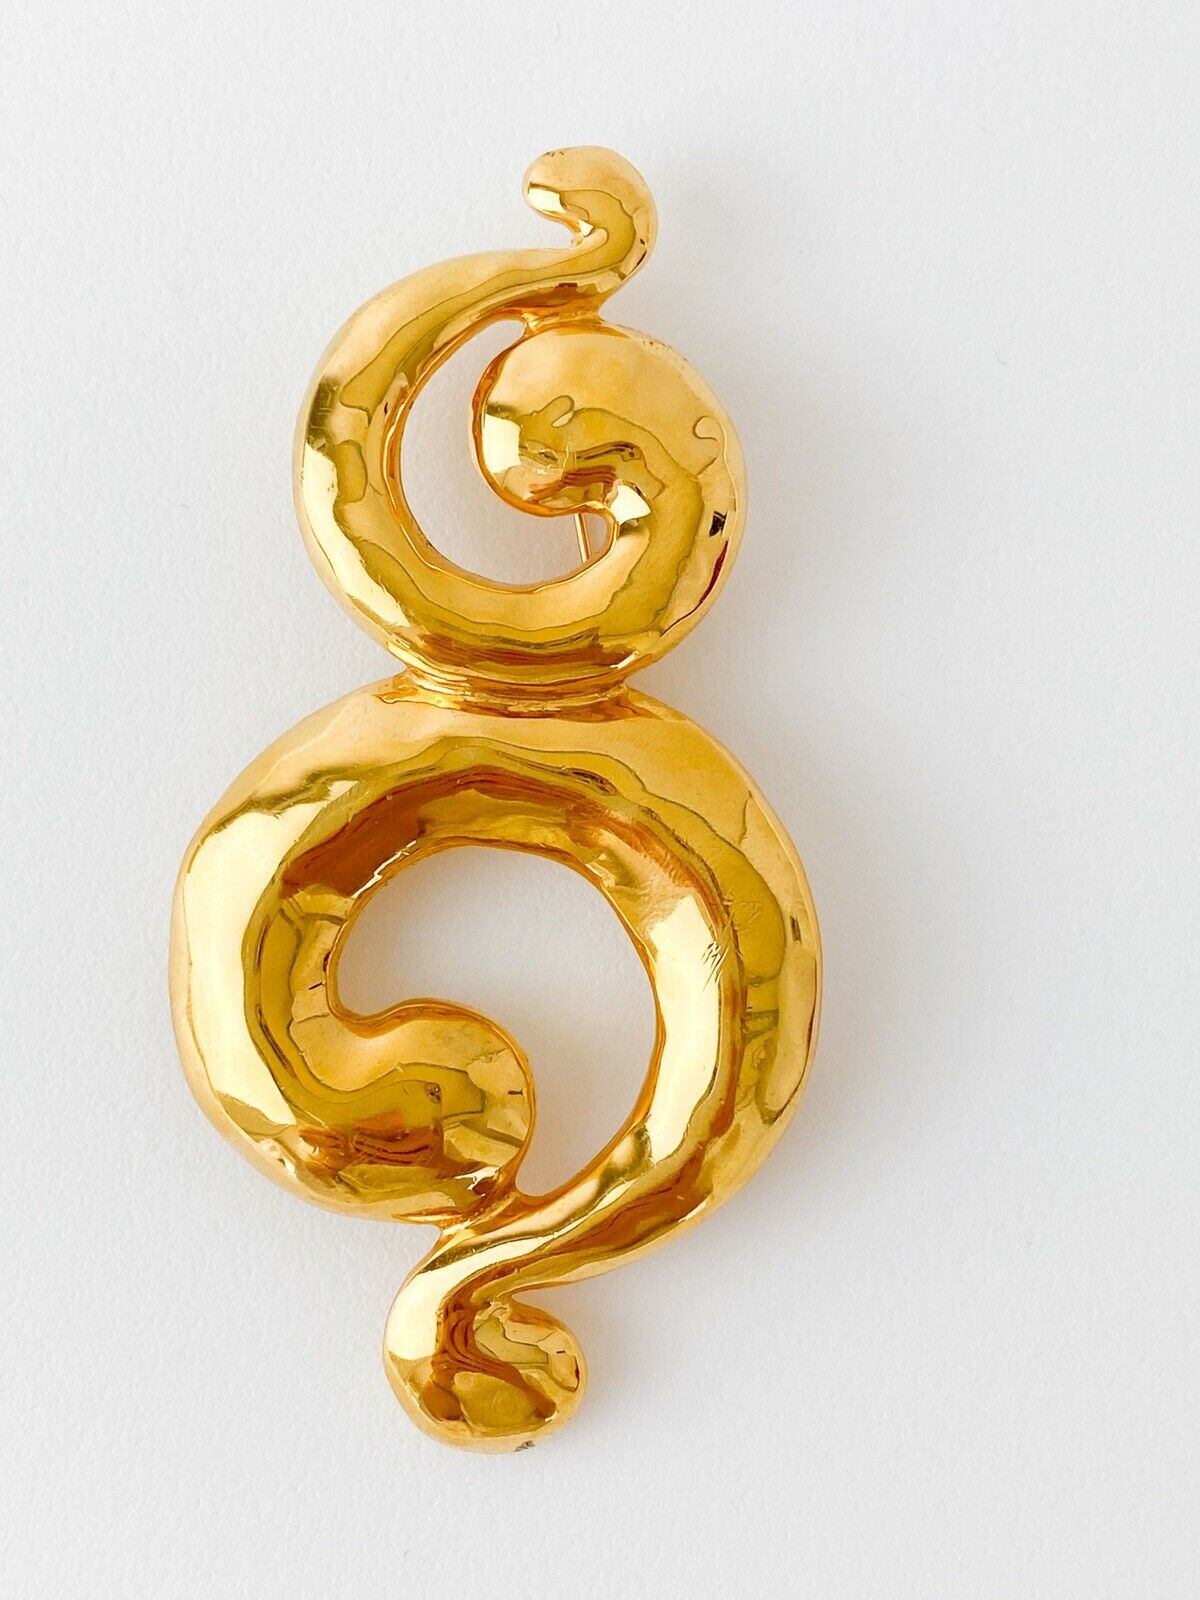 Vintage Yves Saint Laurent spiral brooch